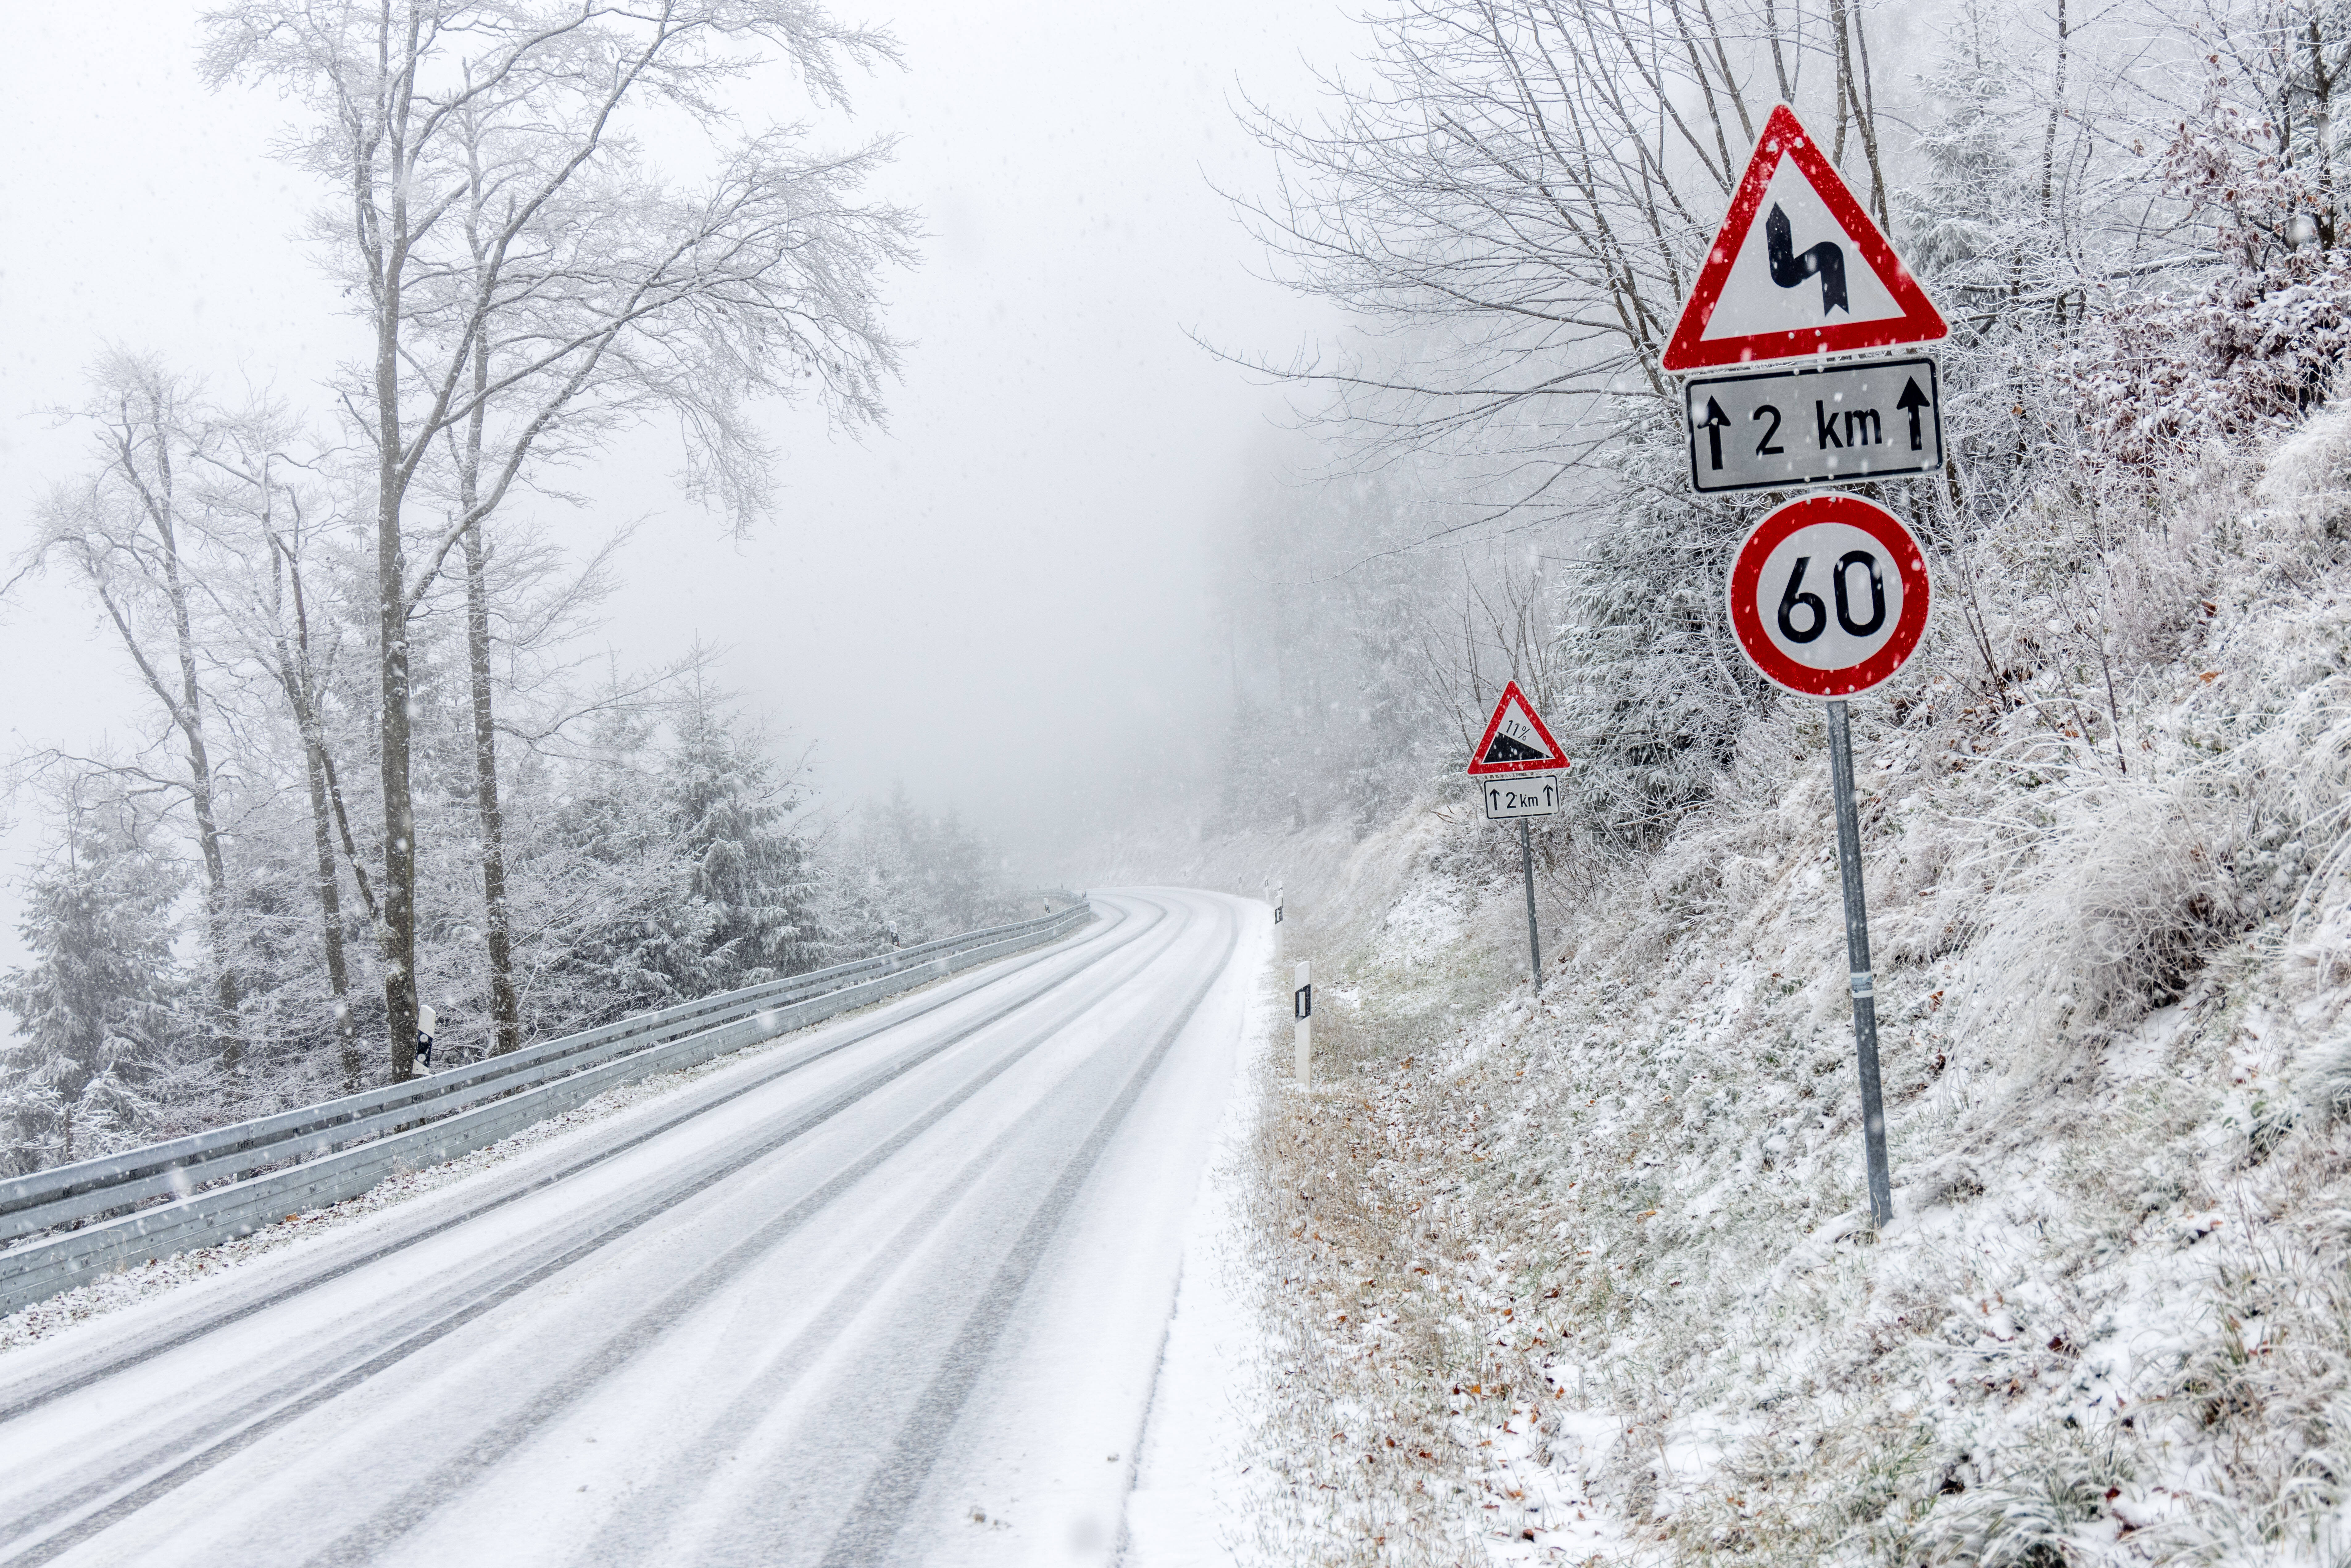 Schnee-Chaos! Wintereinbruch in Deutschland sorgt für Chaos auf den Straßen -Viele Unfälle durch Glätte